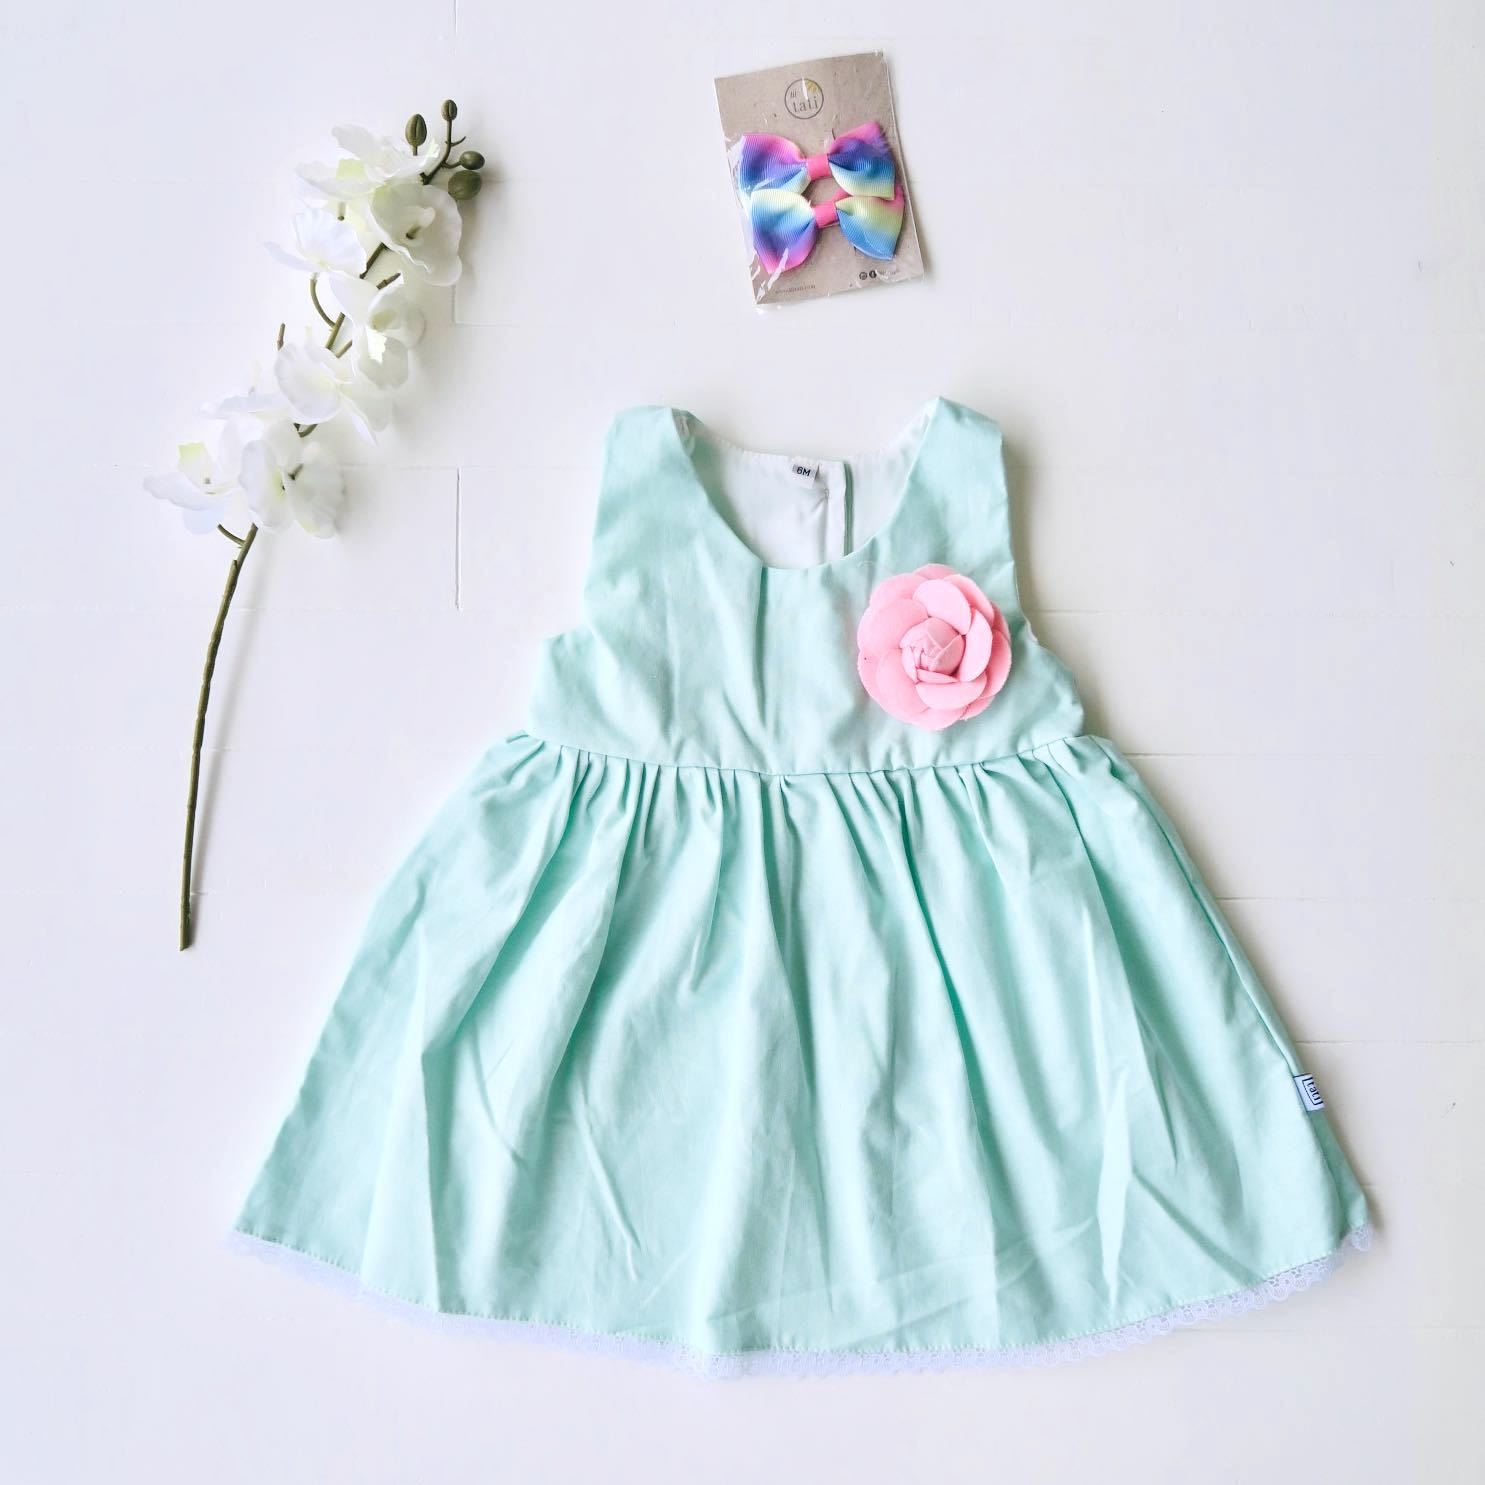 Iris Dress in Mint Linen - Lil' Tati